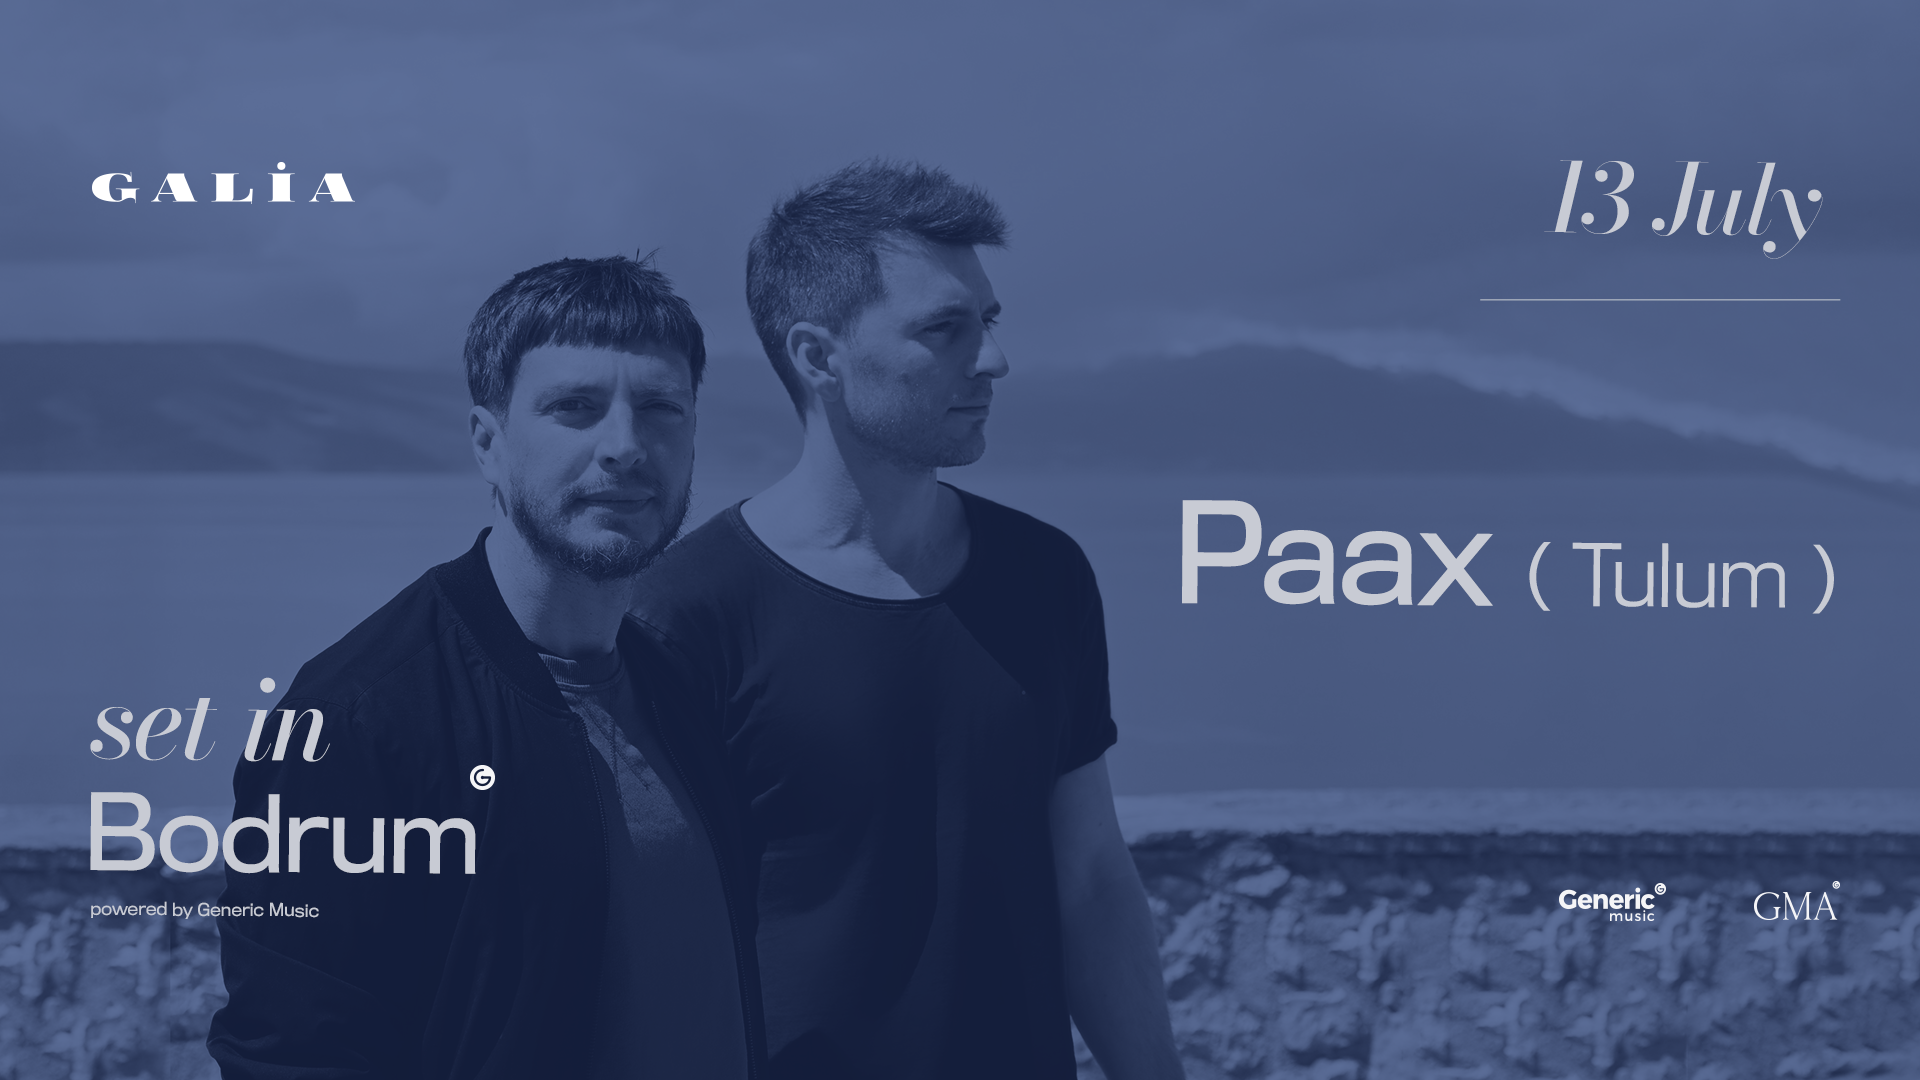 Paax (Tulum) - Set In Bodrum - フライヤー表